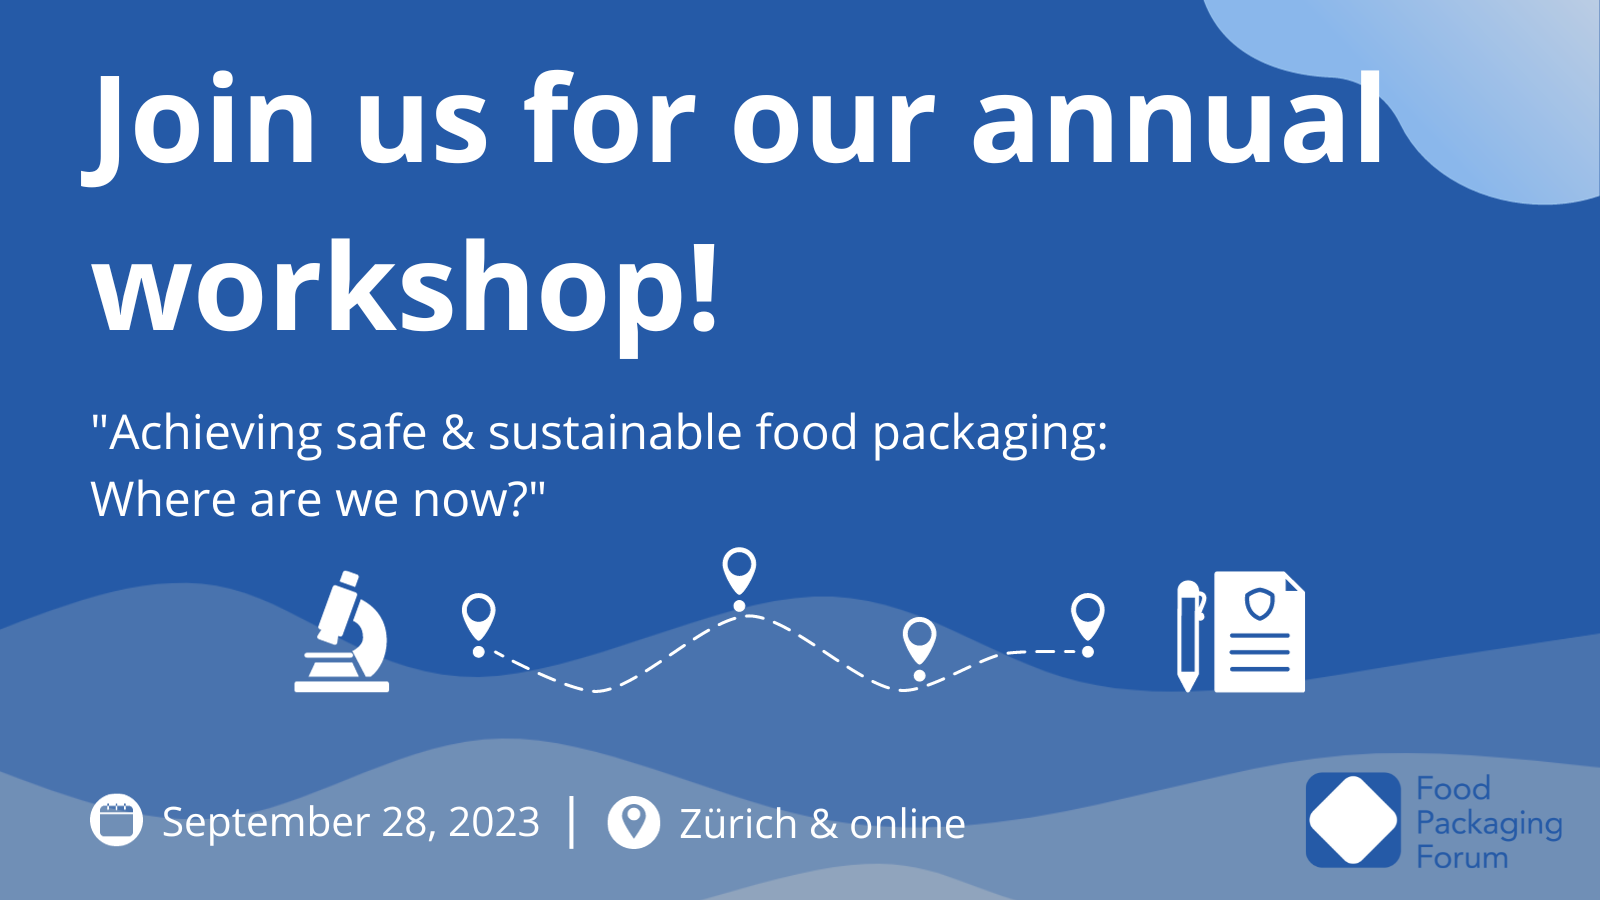 Food Packaging Forum workshop